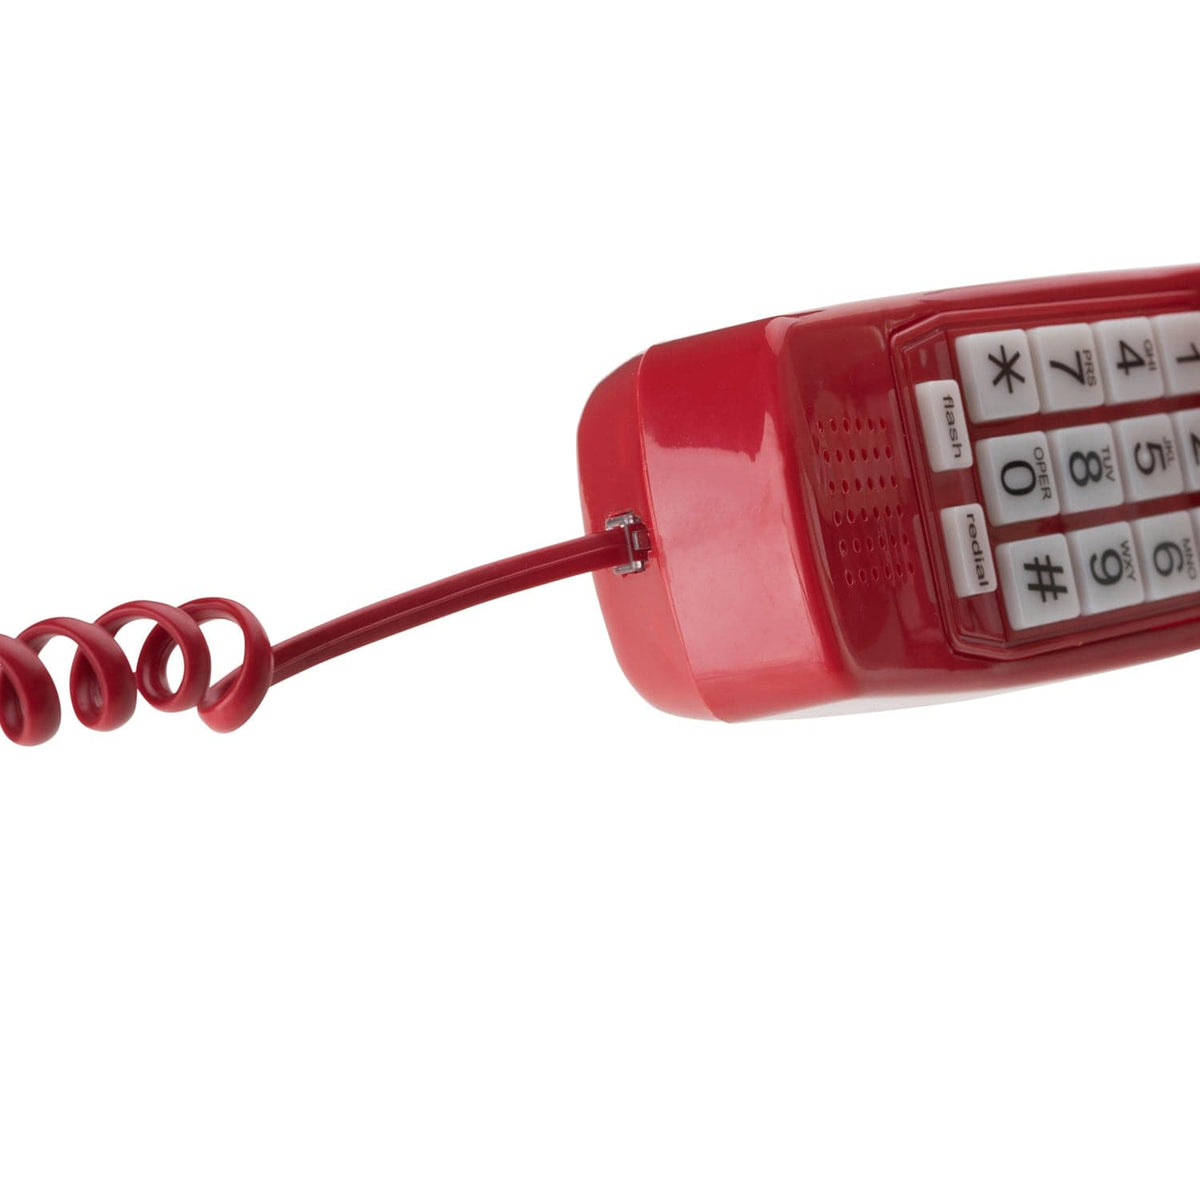 15 ft Telephone Handset Cord for Landline Phone - Crimson Red - USA Trading Depot, LLC